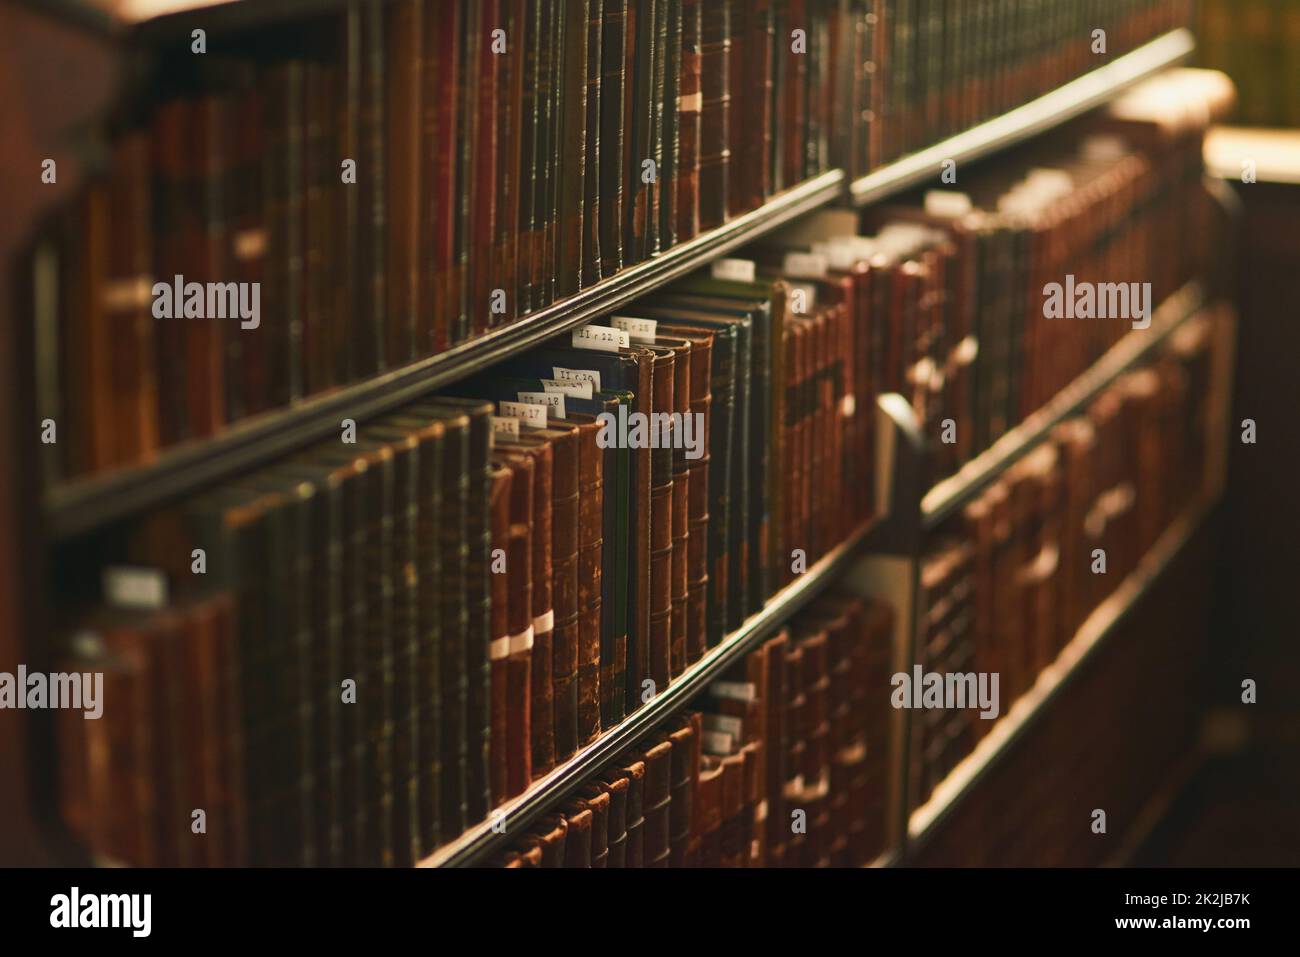 Scegli la tua scelta. Scatto ritagliato di una grande biblioteca vintage piena di libri. Foto Stock